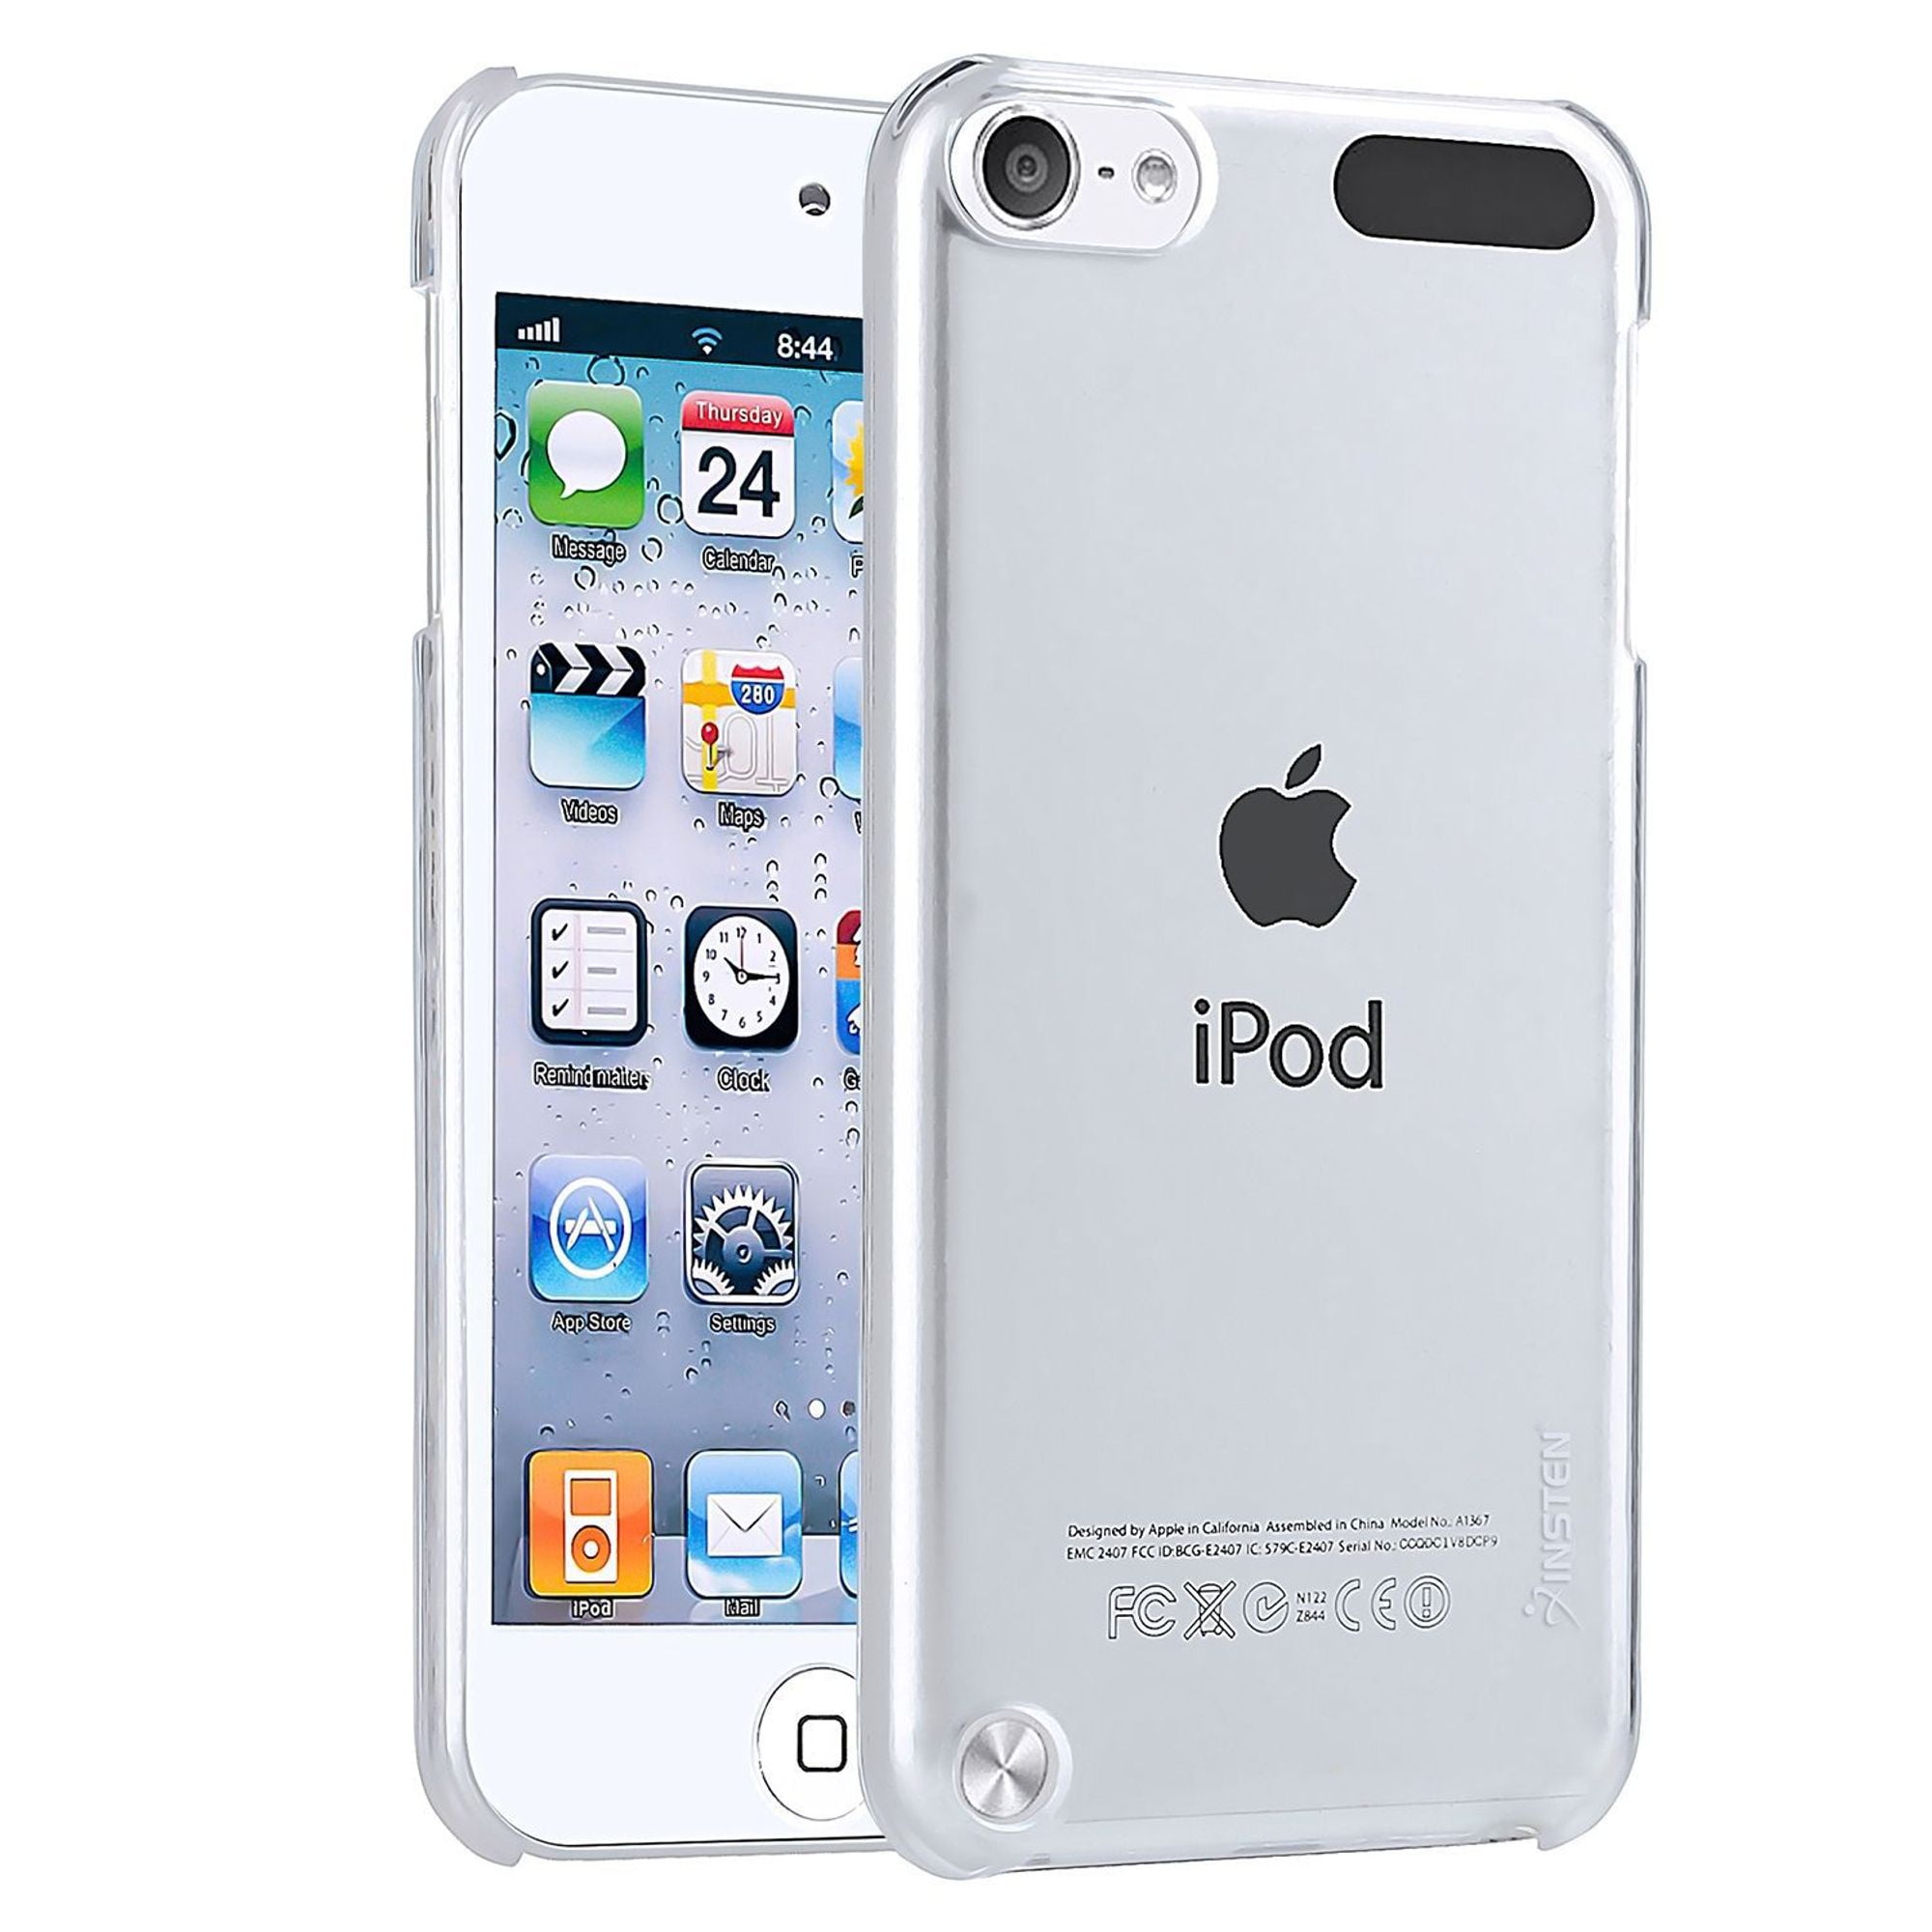 Apple iphone ipod. Apple IPOD Touch 5. Apple IPOD Touch 6. Apple IPOD Touch 6th Generation. IPOD Touch 5 32gb.